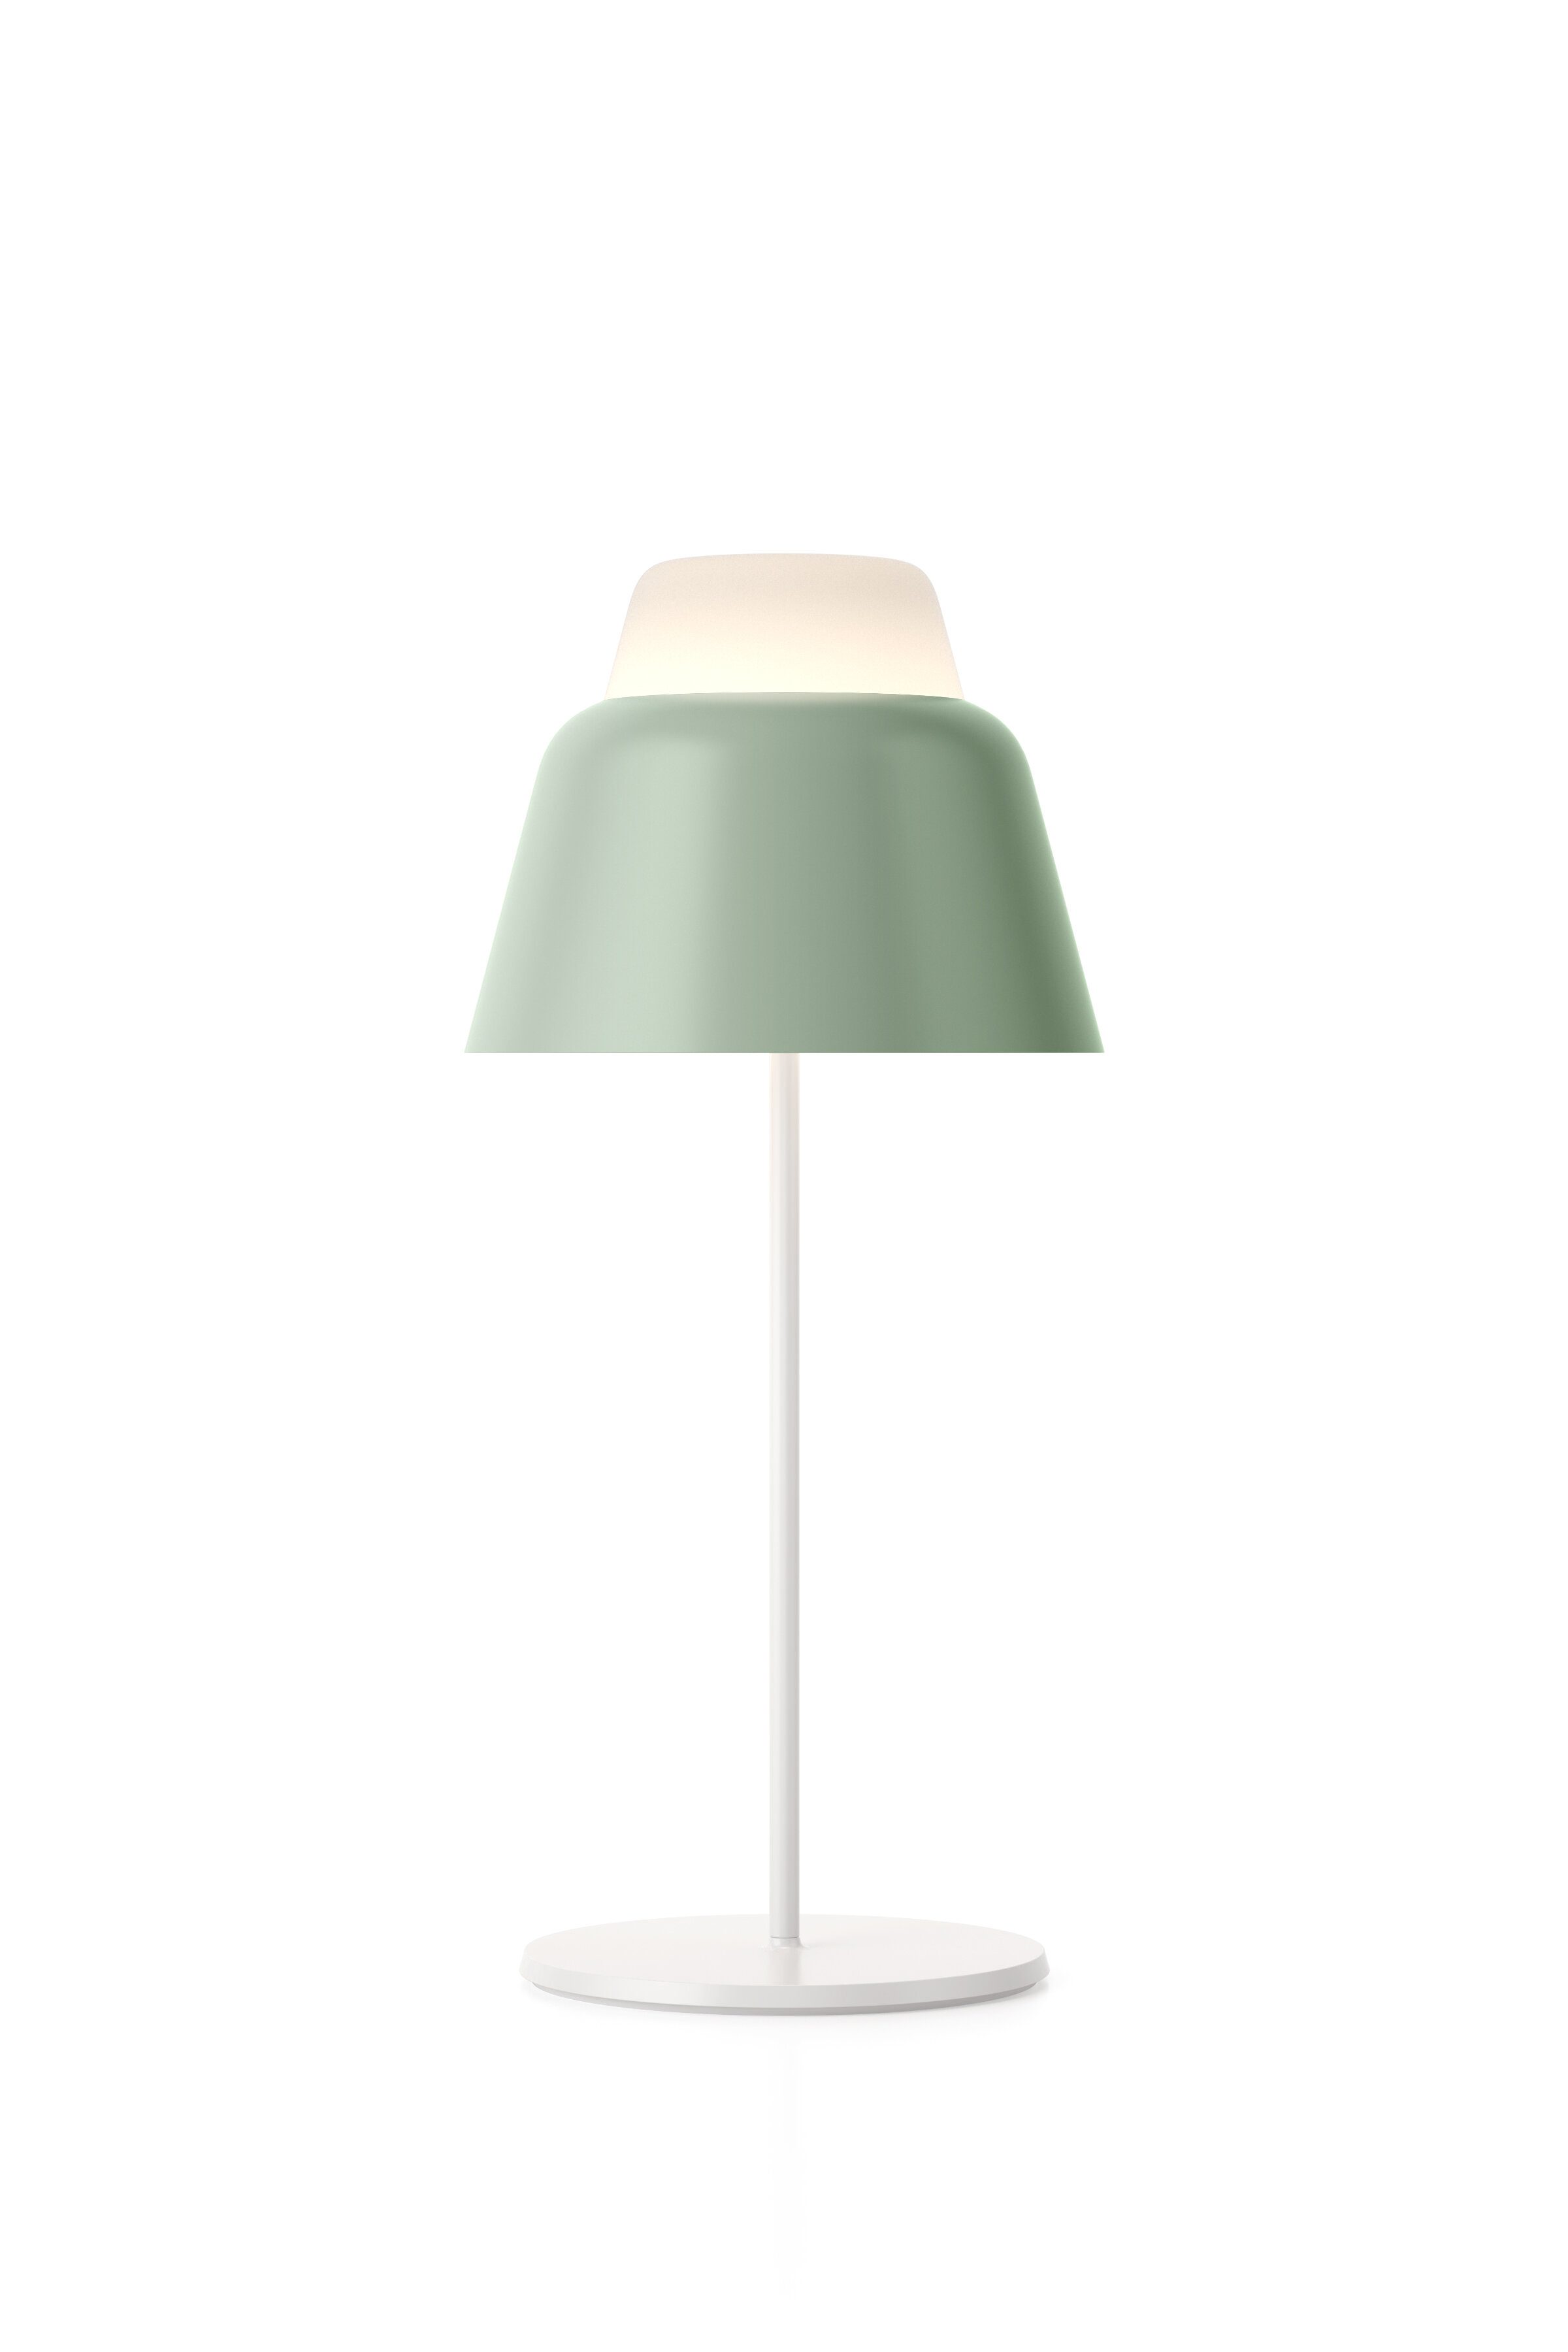 teo-modu-table-lamp-matte-lightgreen-on-cutout.jpg